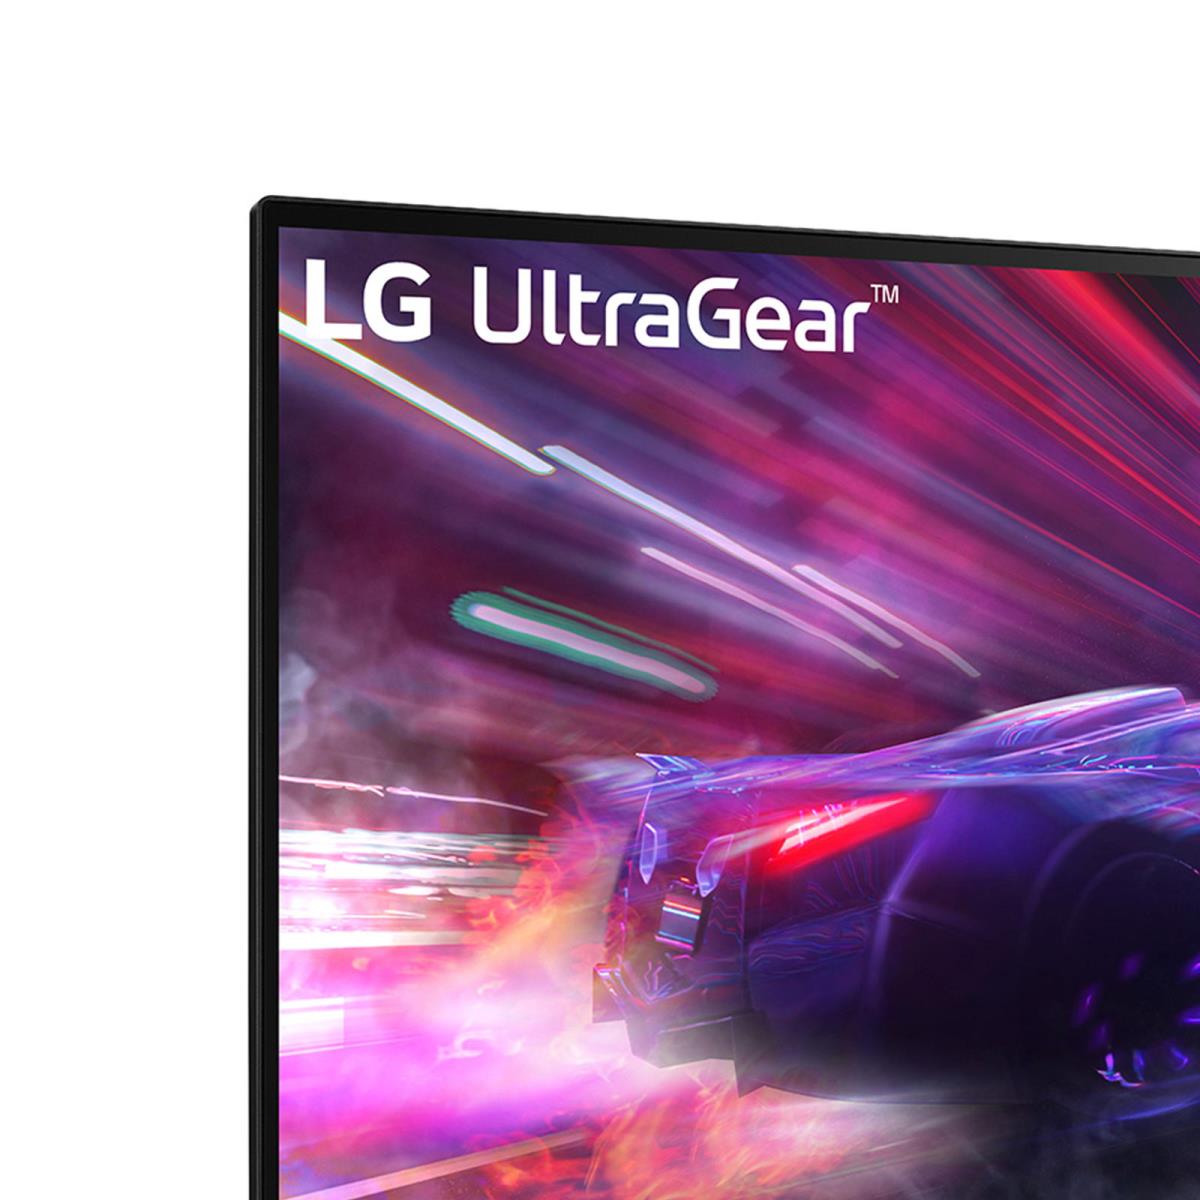 LG Ultragear Gaming 27 Inch (68.4 Cm) Full HD (1920 x 1080) Pixels LCD  Monitor 165Hz, 1ms, Freesync Premium, HDMI x 2, Display Port, HP Out -  27GQ50F